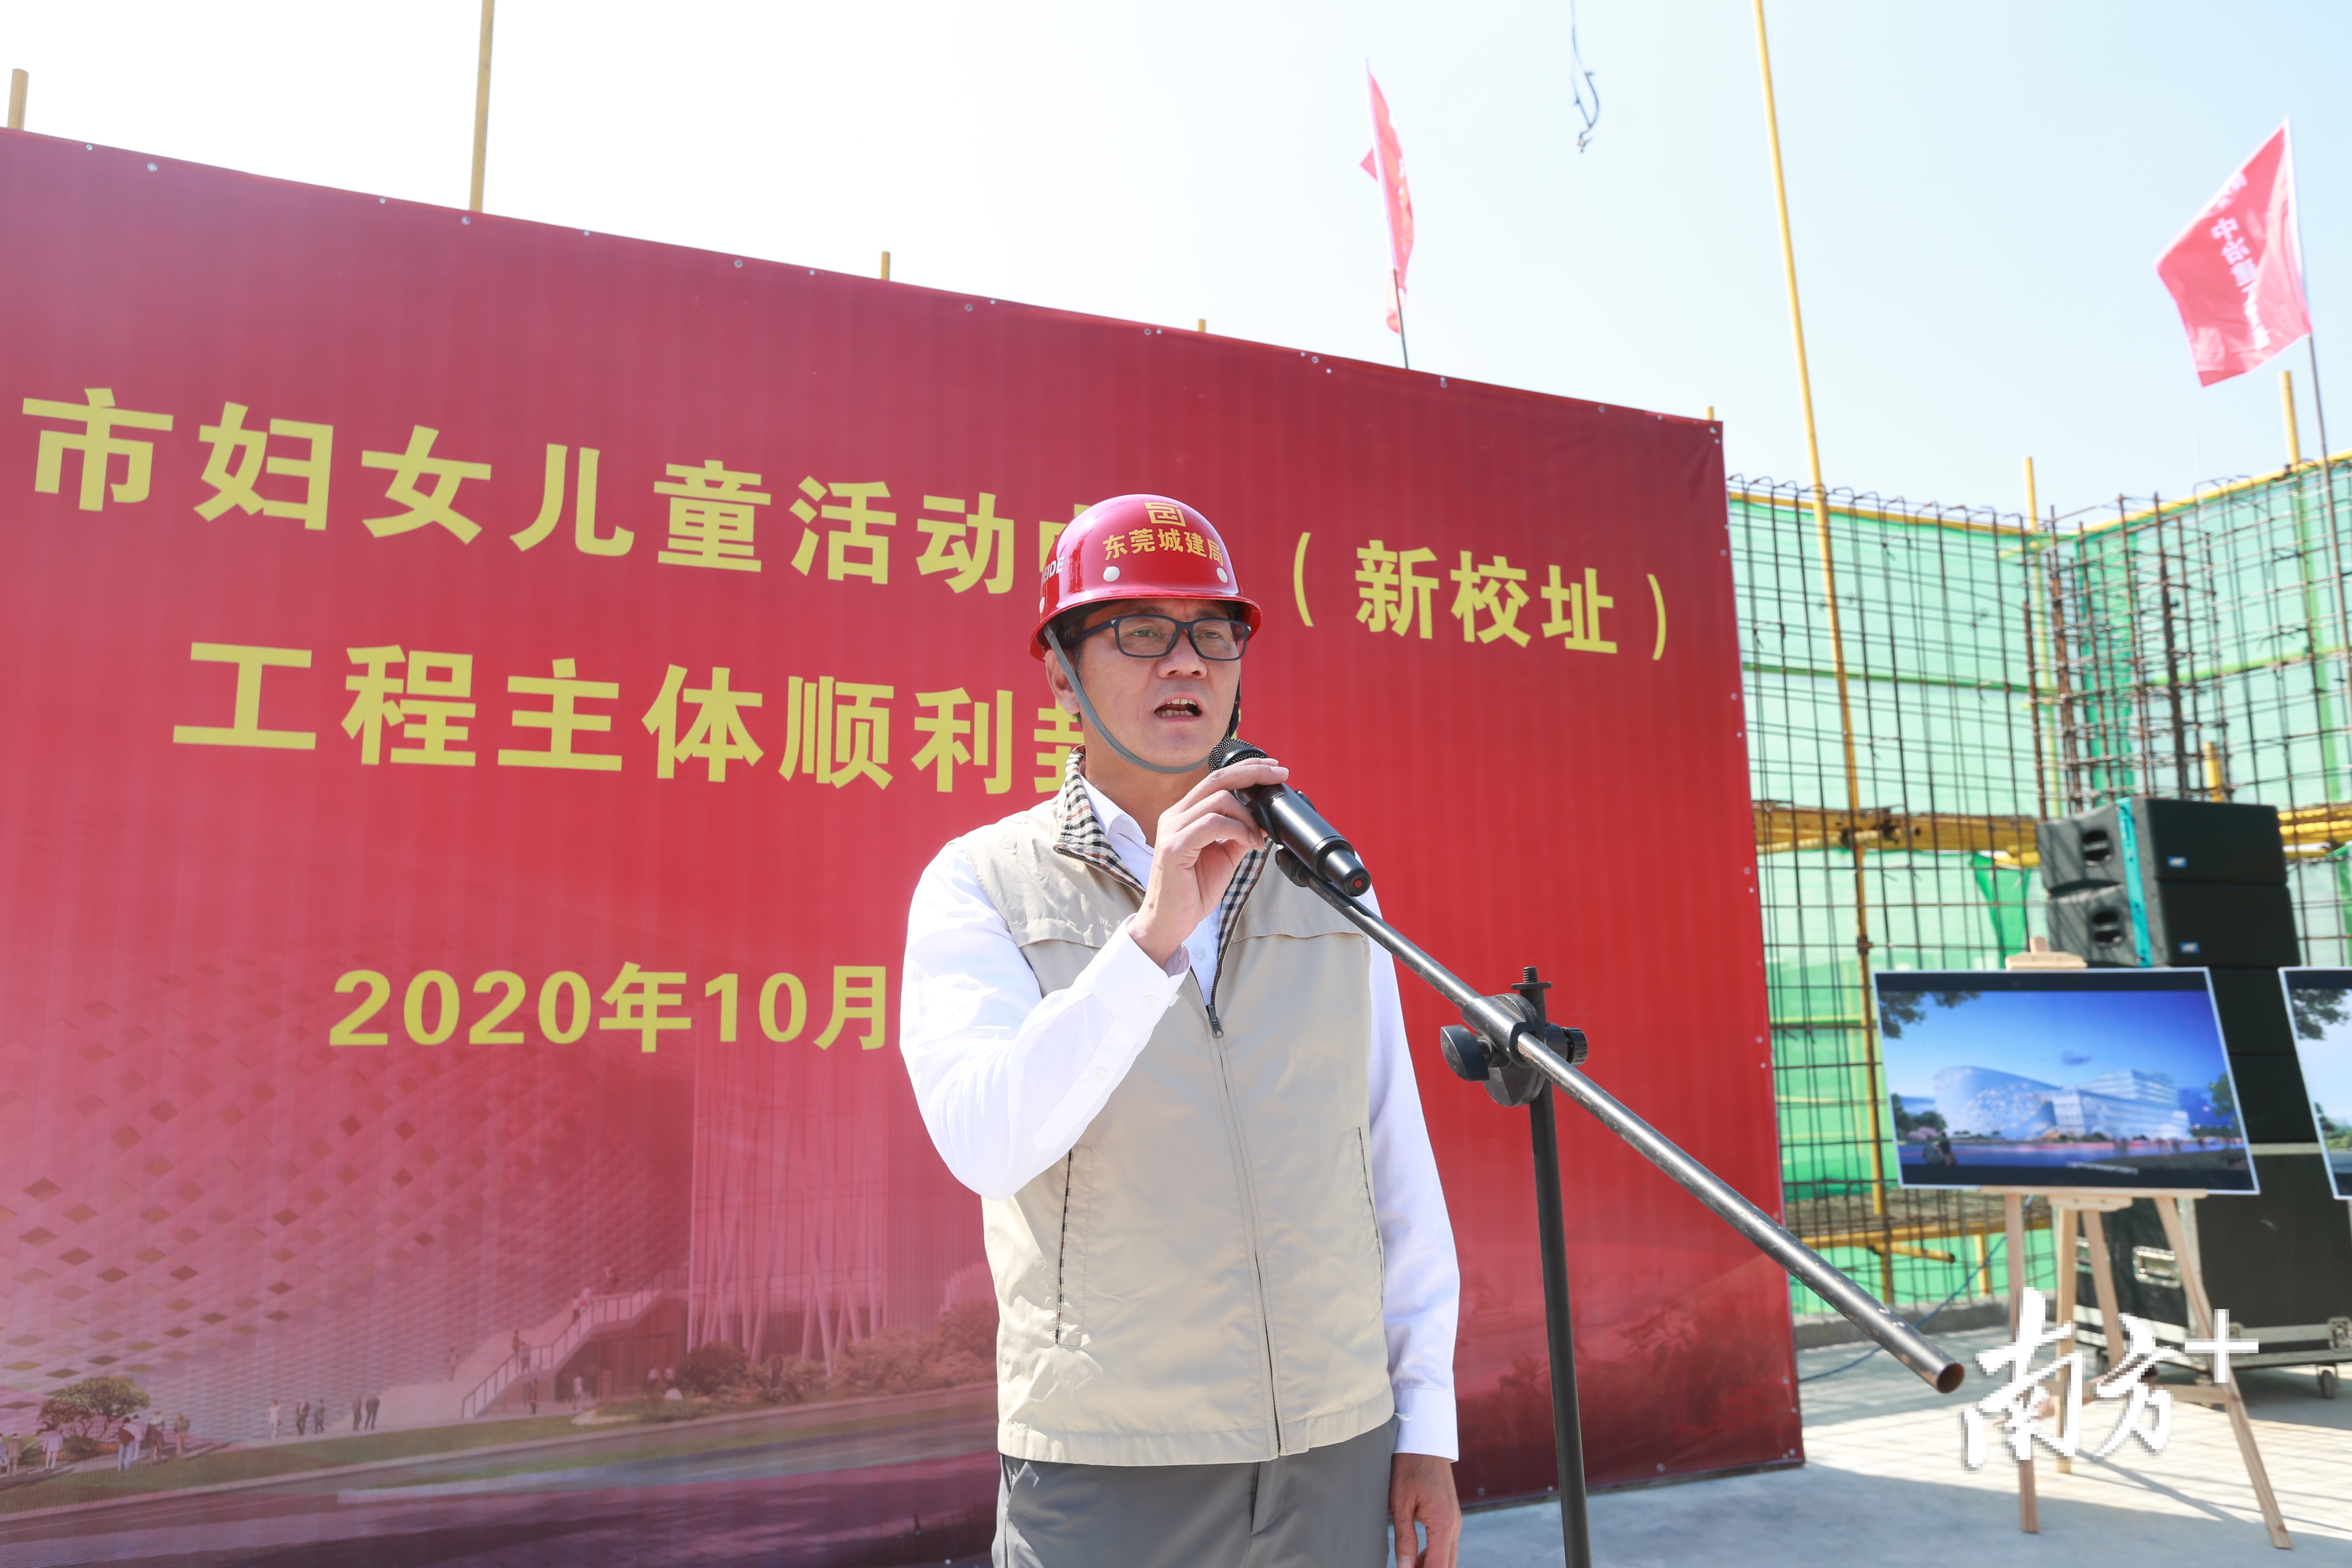 东莞市城建局局长祁志强参加封顶仪式并发表了讲话